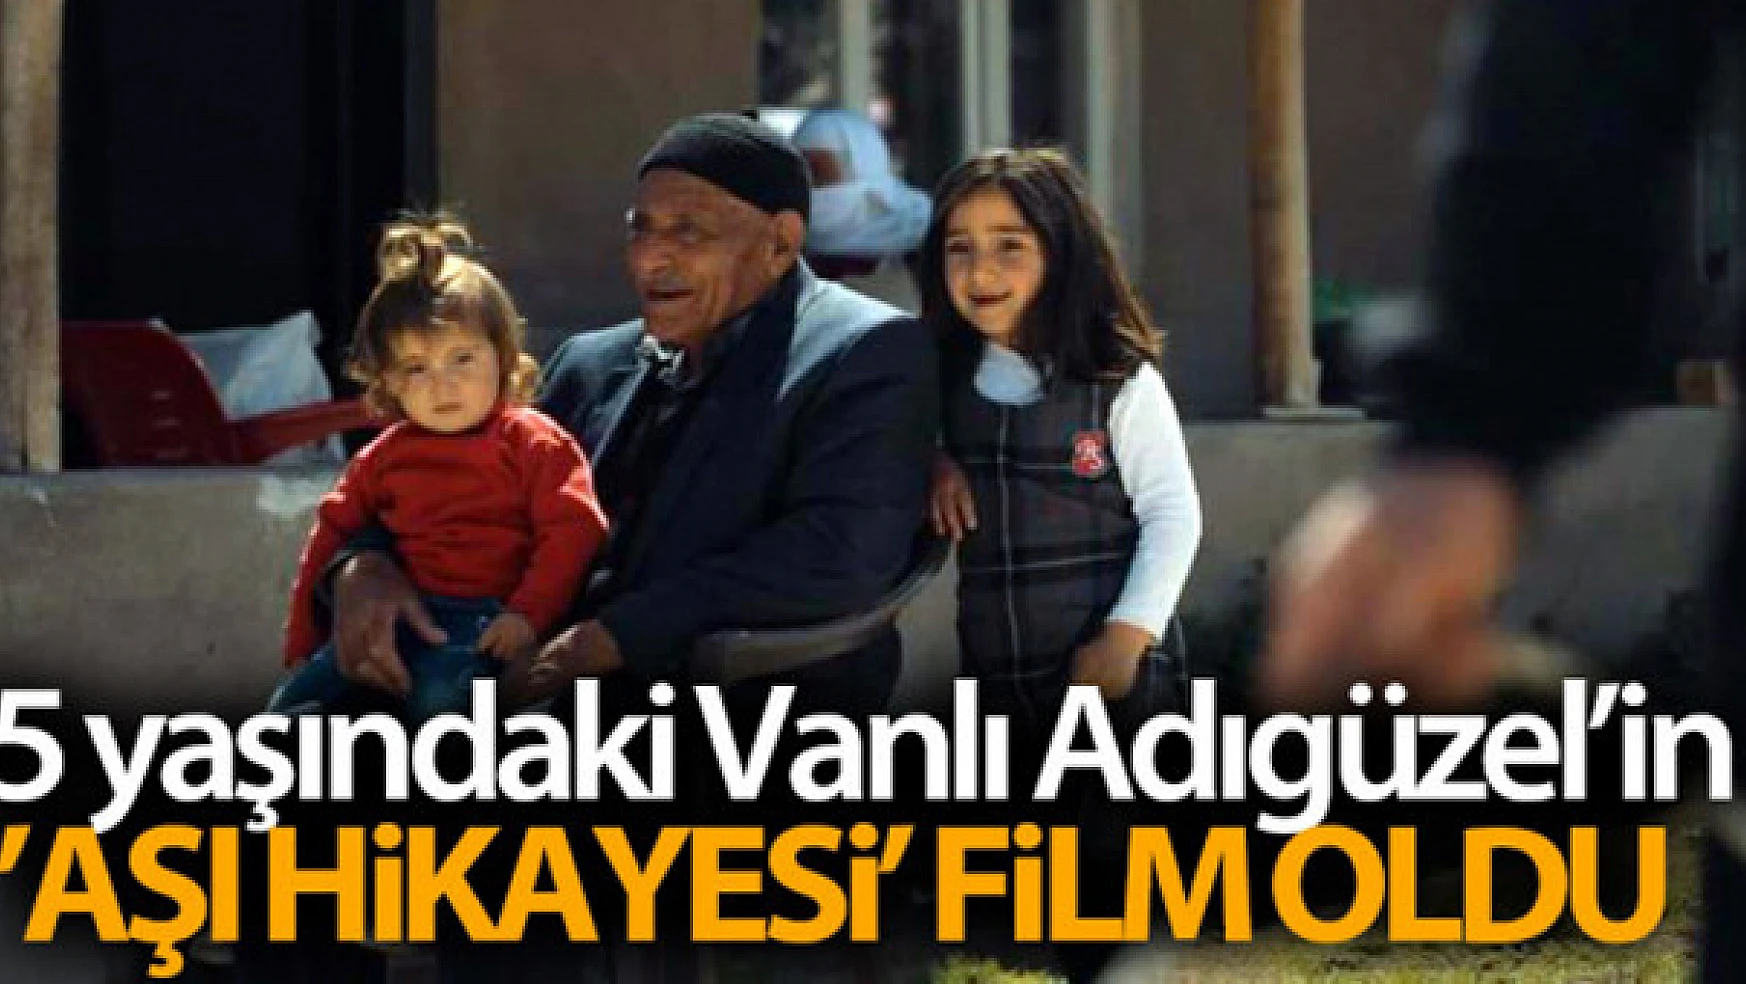 85 yaşındaki Vanlı Adıgüzel'in 'aşı hikayesi' film oldu